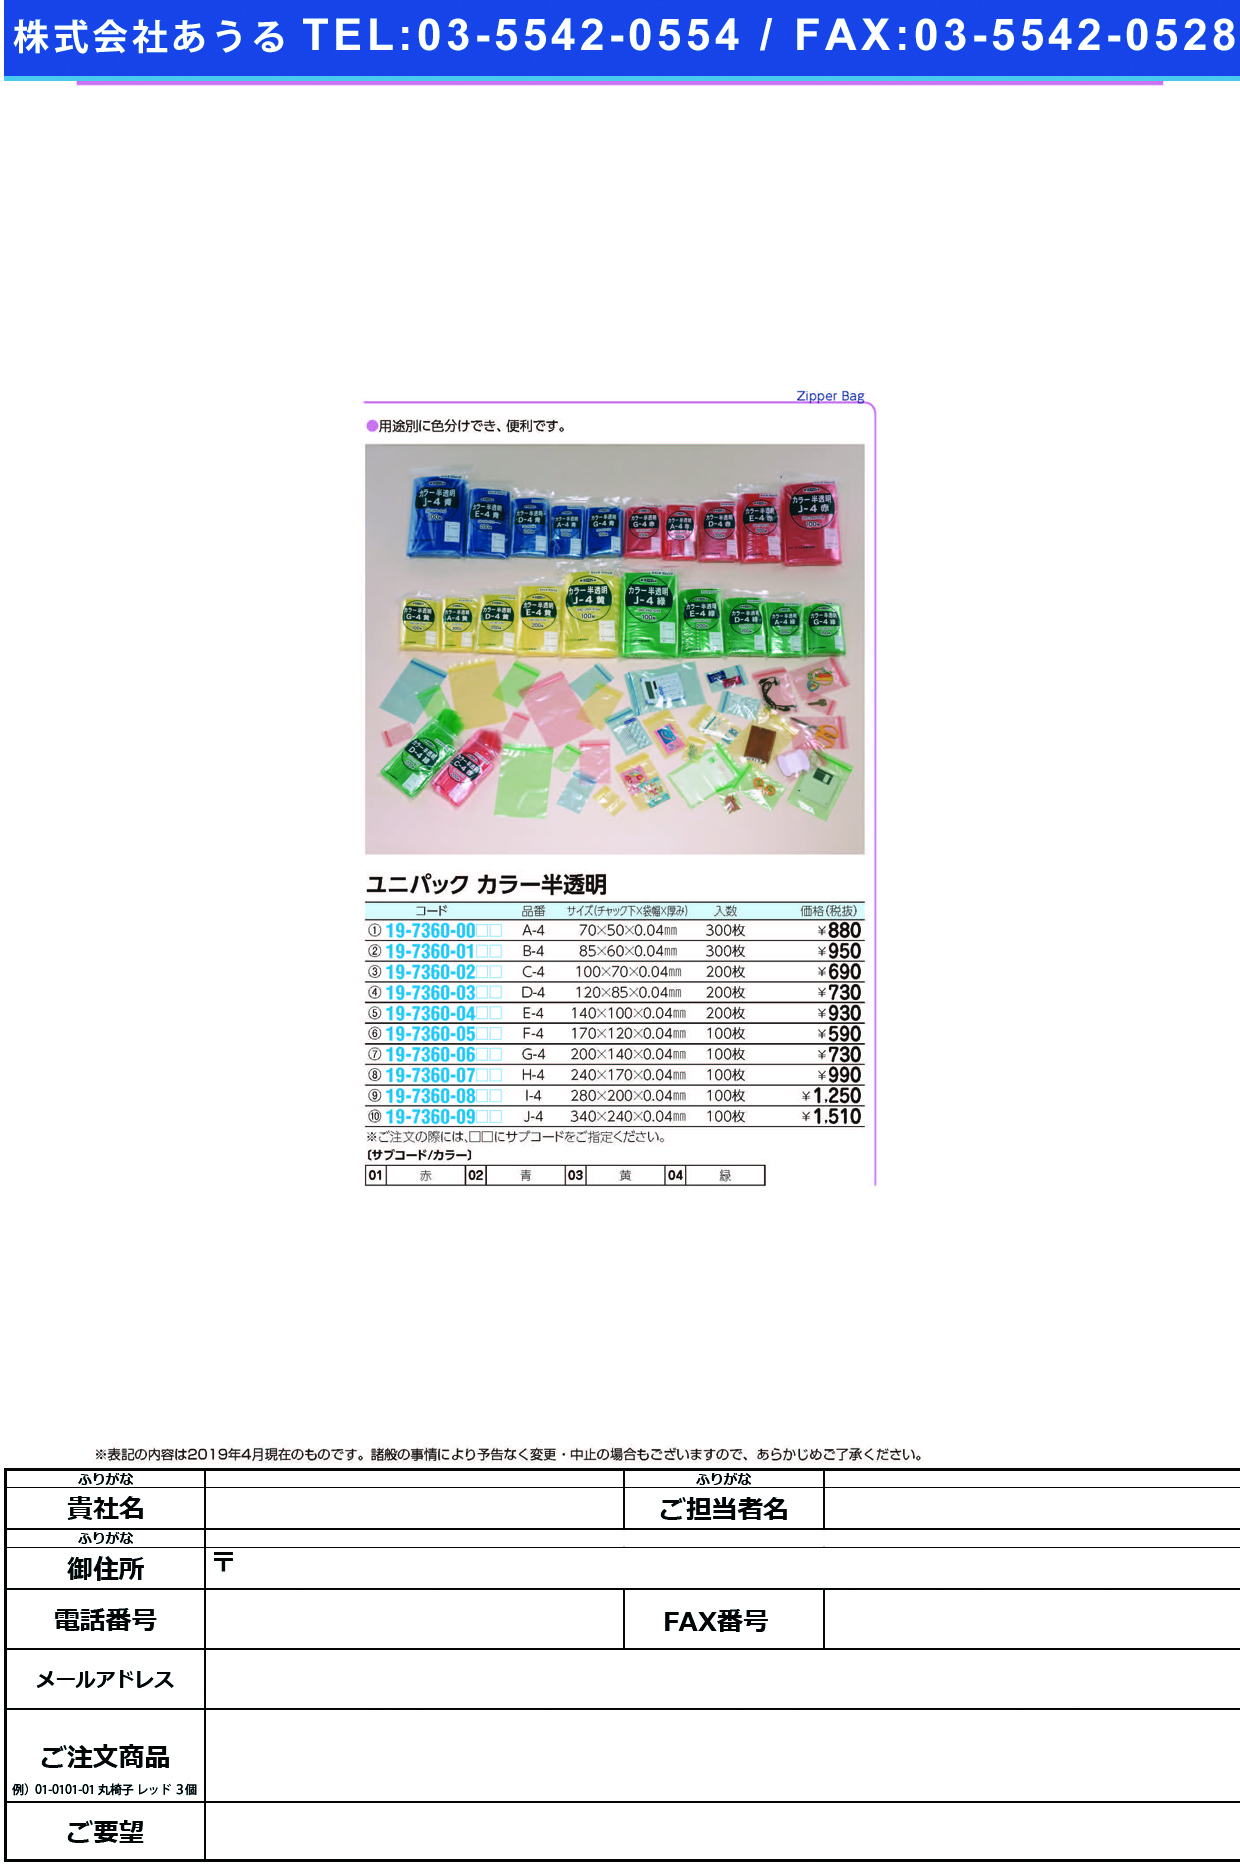 (19-7360-07)ユニパックカラー半透明 H-4(100ﾏｲｲﾘ) ﾕﾆﾊﾟｯｸｶﾗｰﾊﾝﾄｳﾒｲ 赤【1袋単位】【2019年カタログ商品】